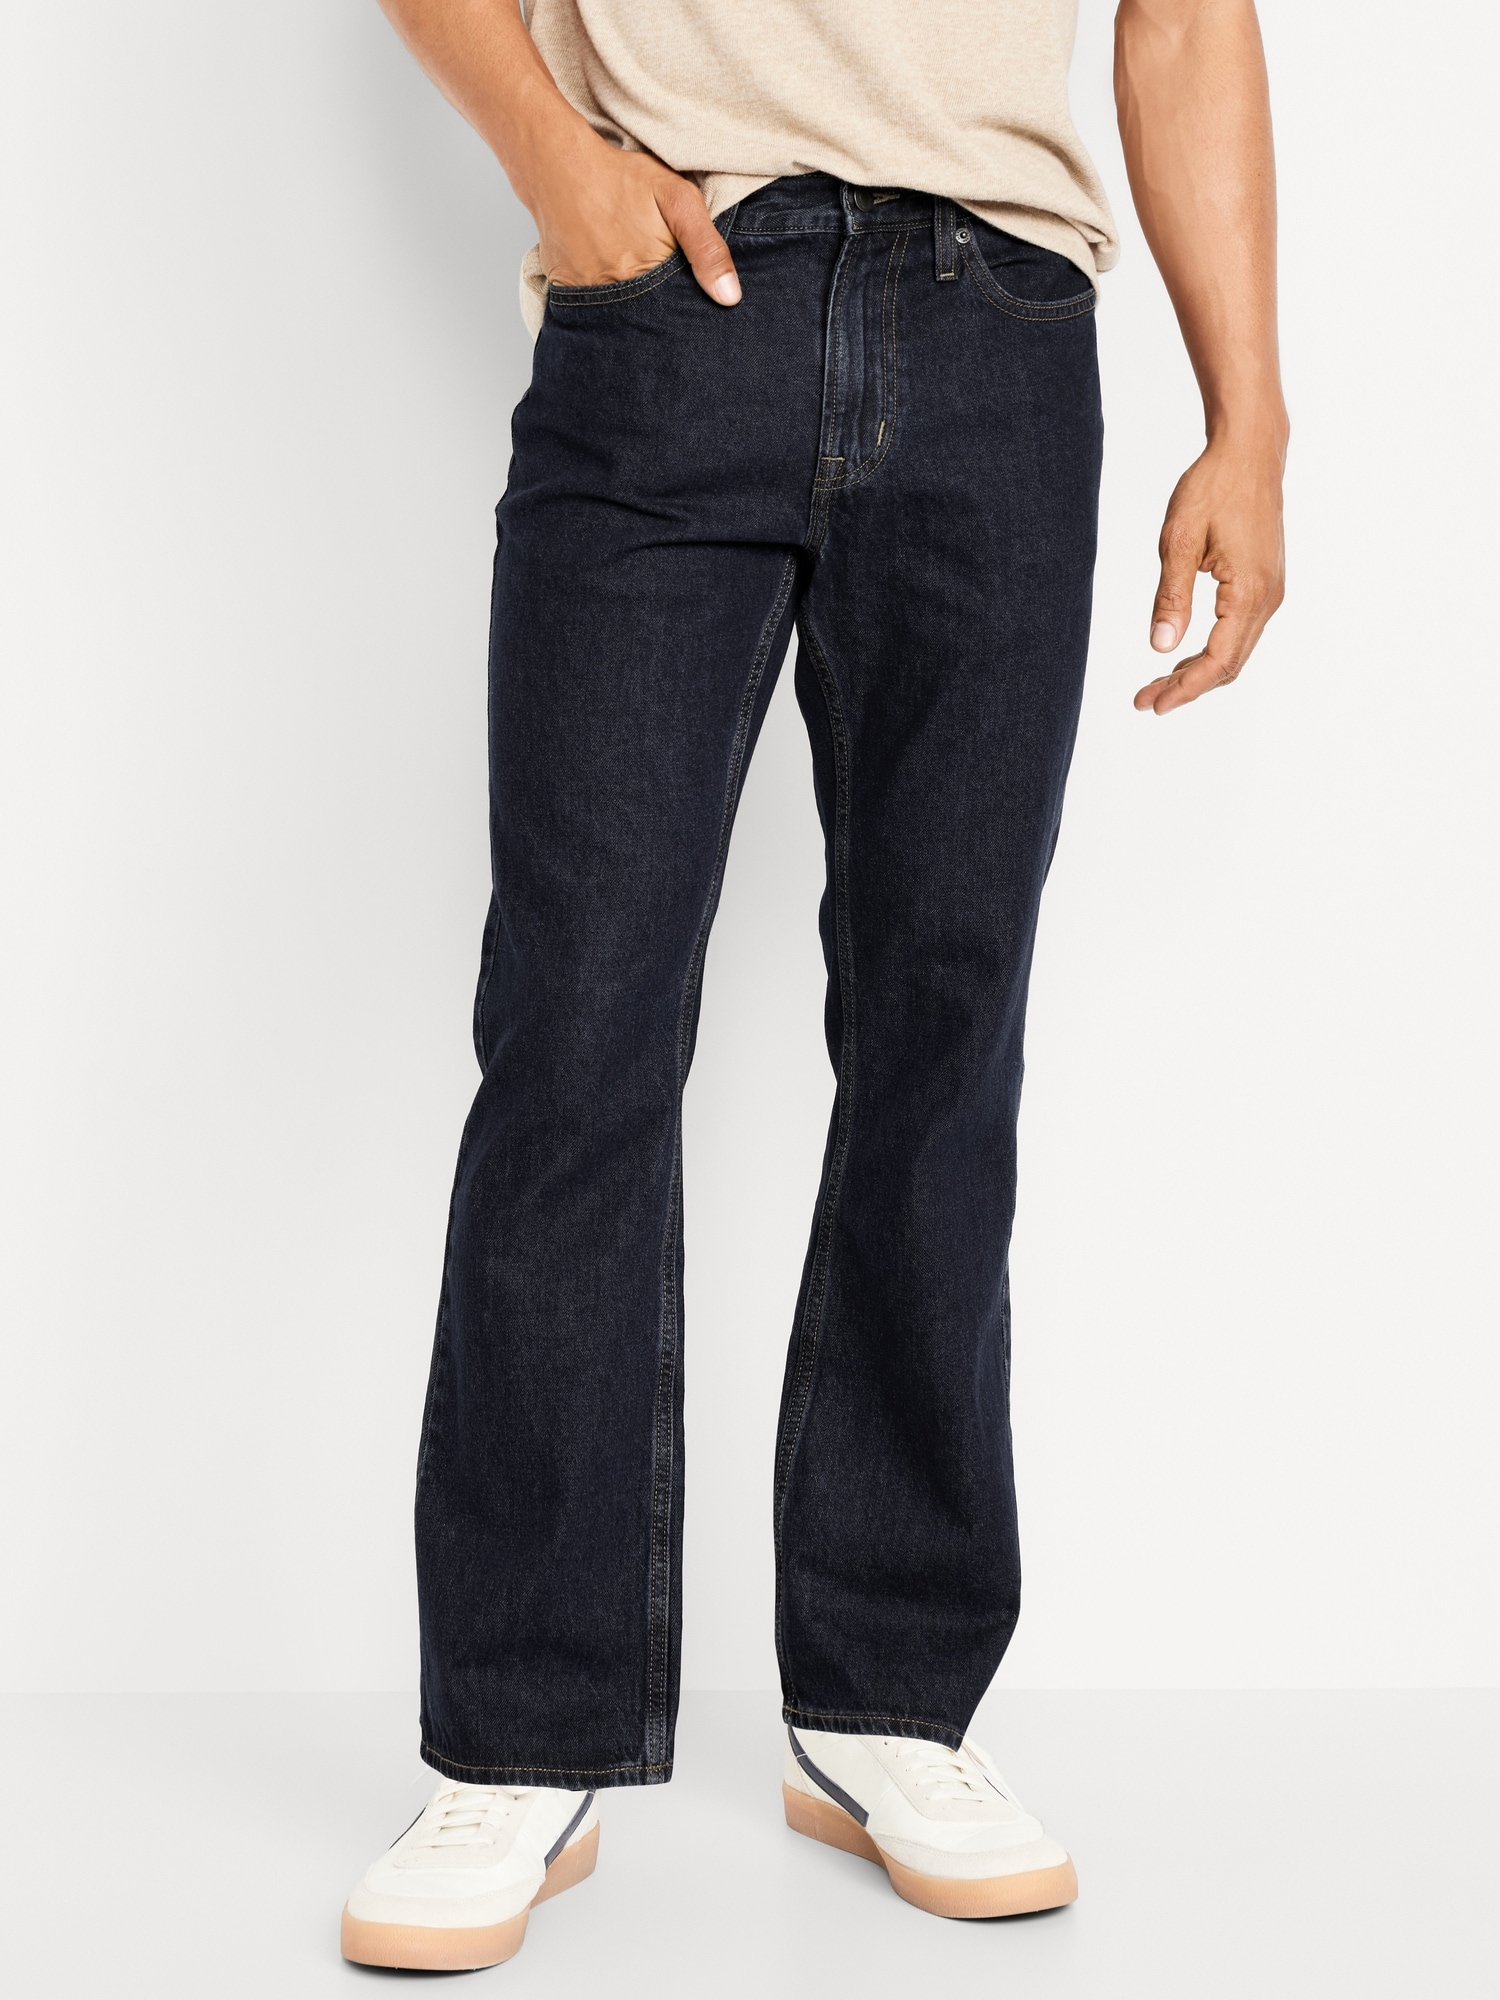 Old Navy Mens Blue Loose Fit Denim Jeans Size 44/32 - beyond exchange